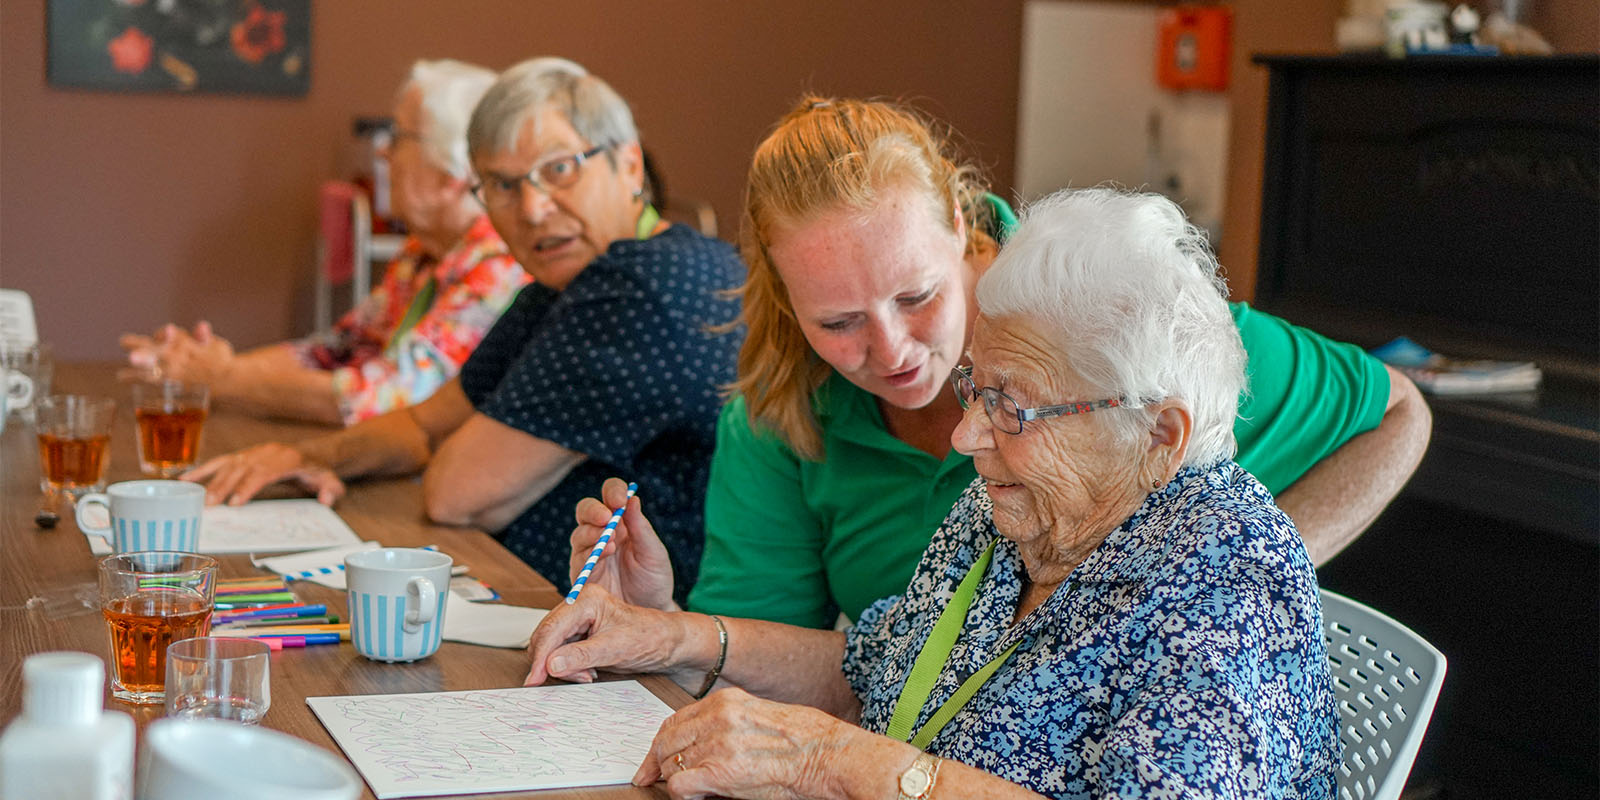 Een bewoner met dementie wordt ondersteund om iets te tekenen of te schrijven op papier.